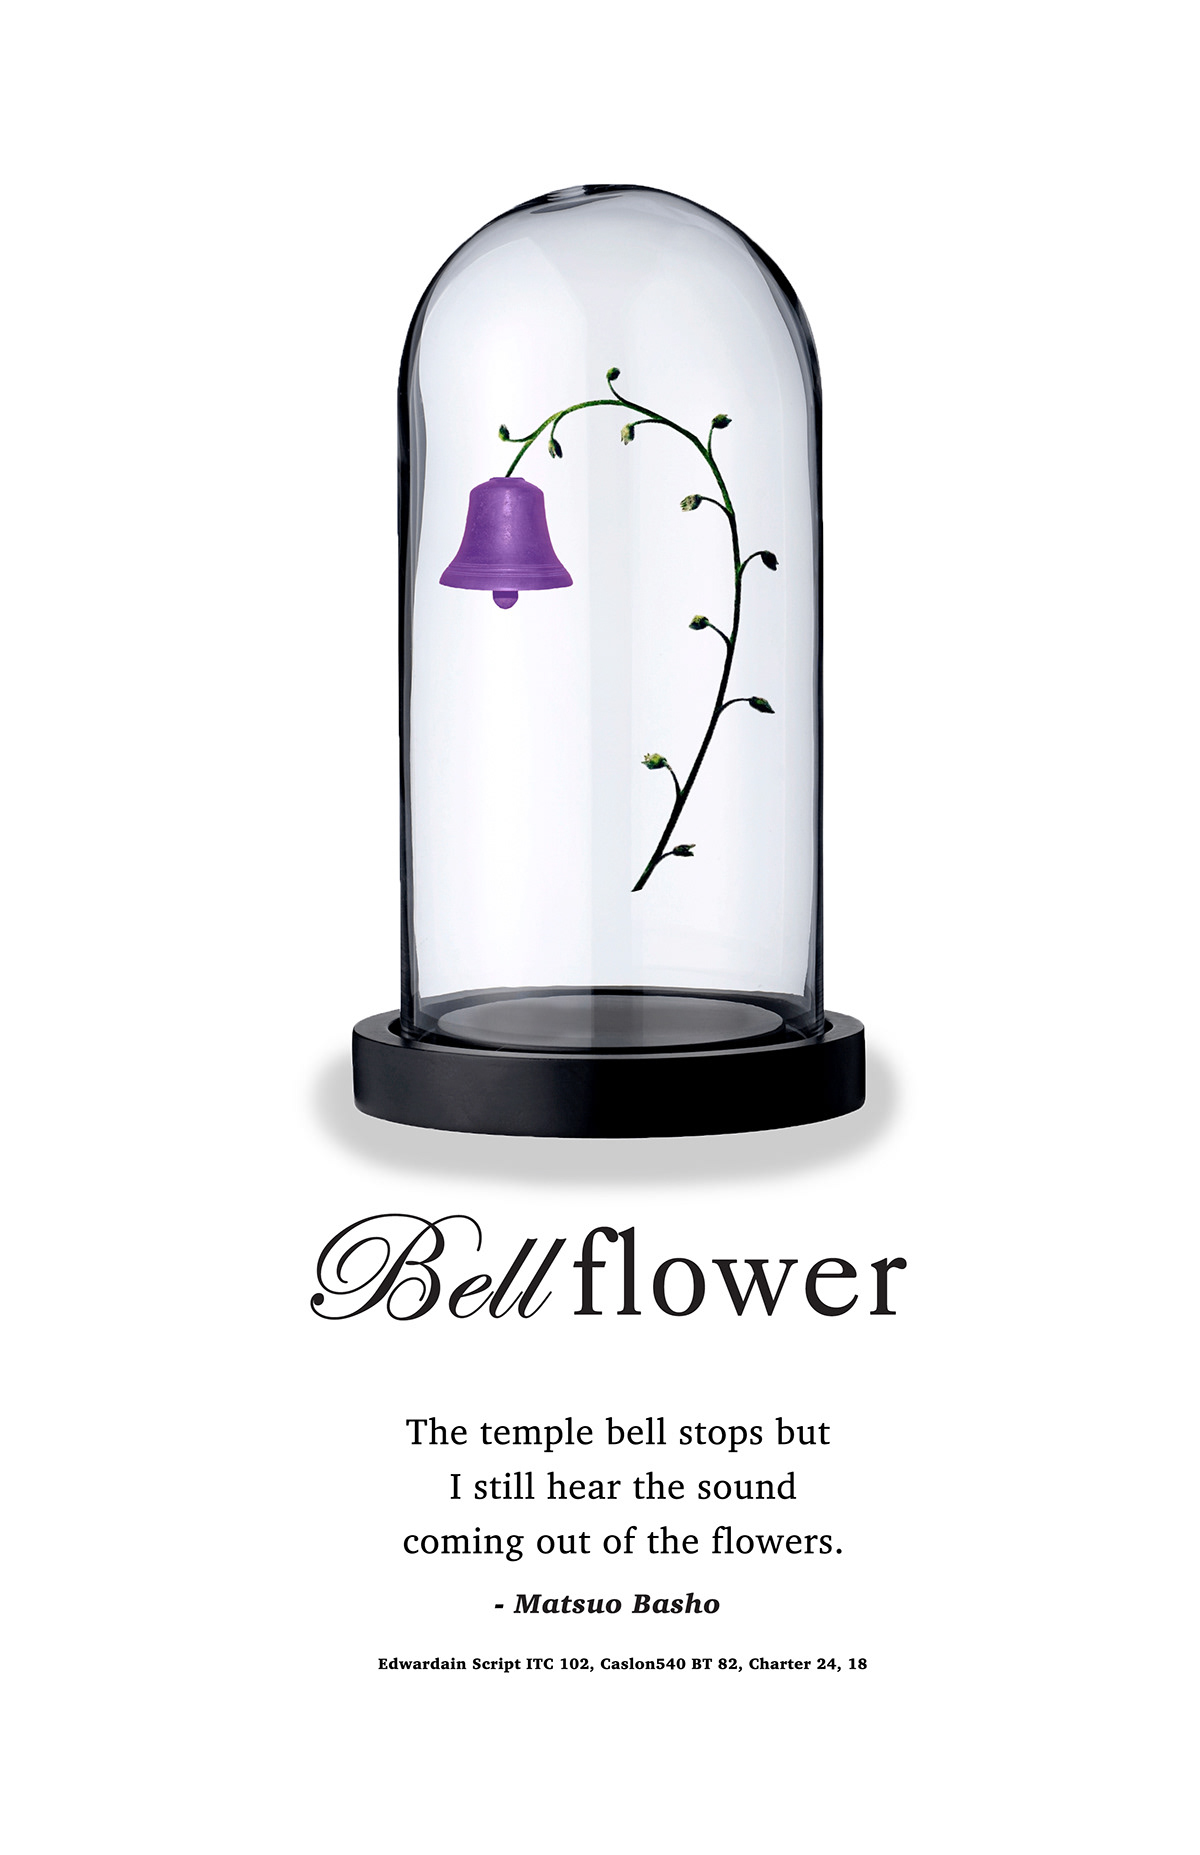 bellflower bell jar poster bell flower